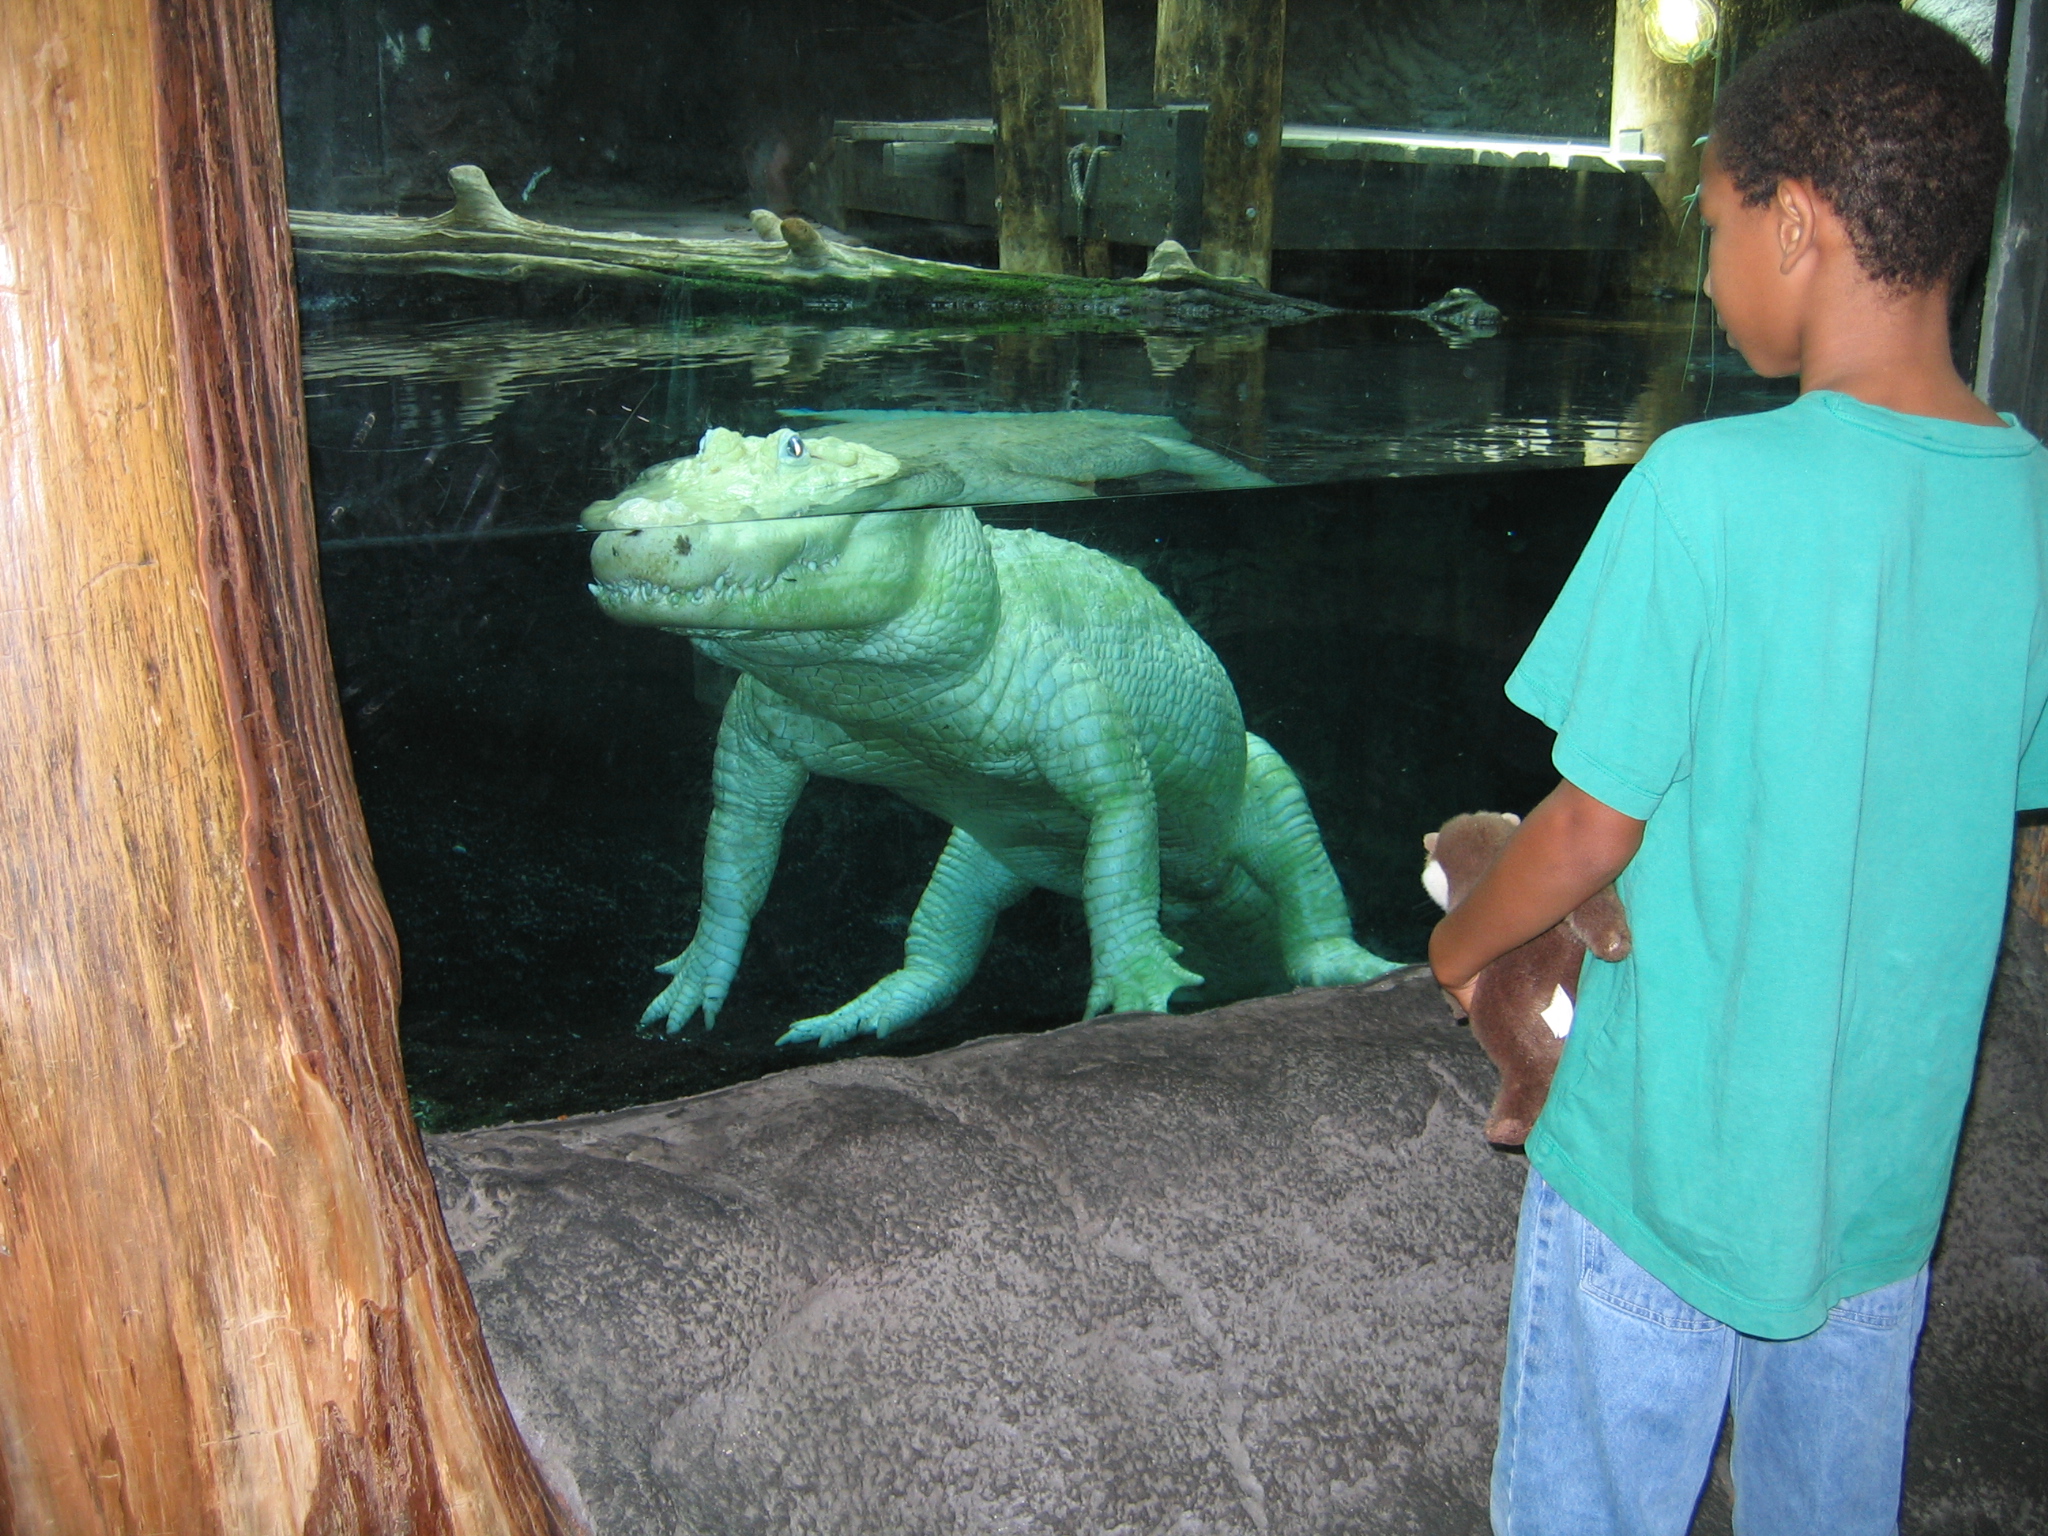 White_alligator_-_Aquarium_of_the_Americas.jpg